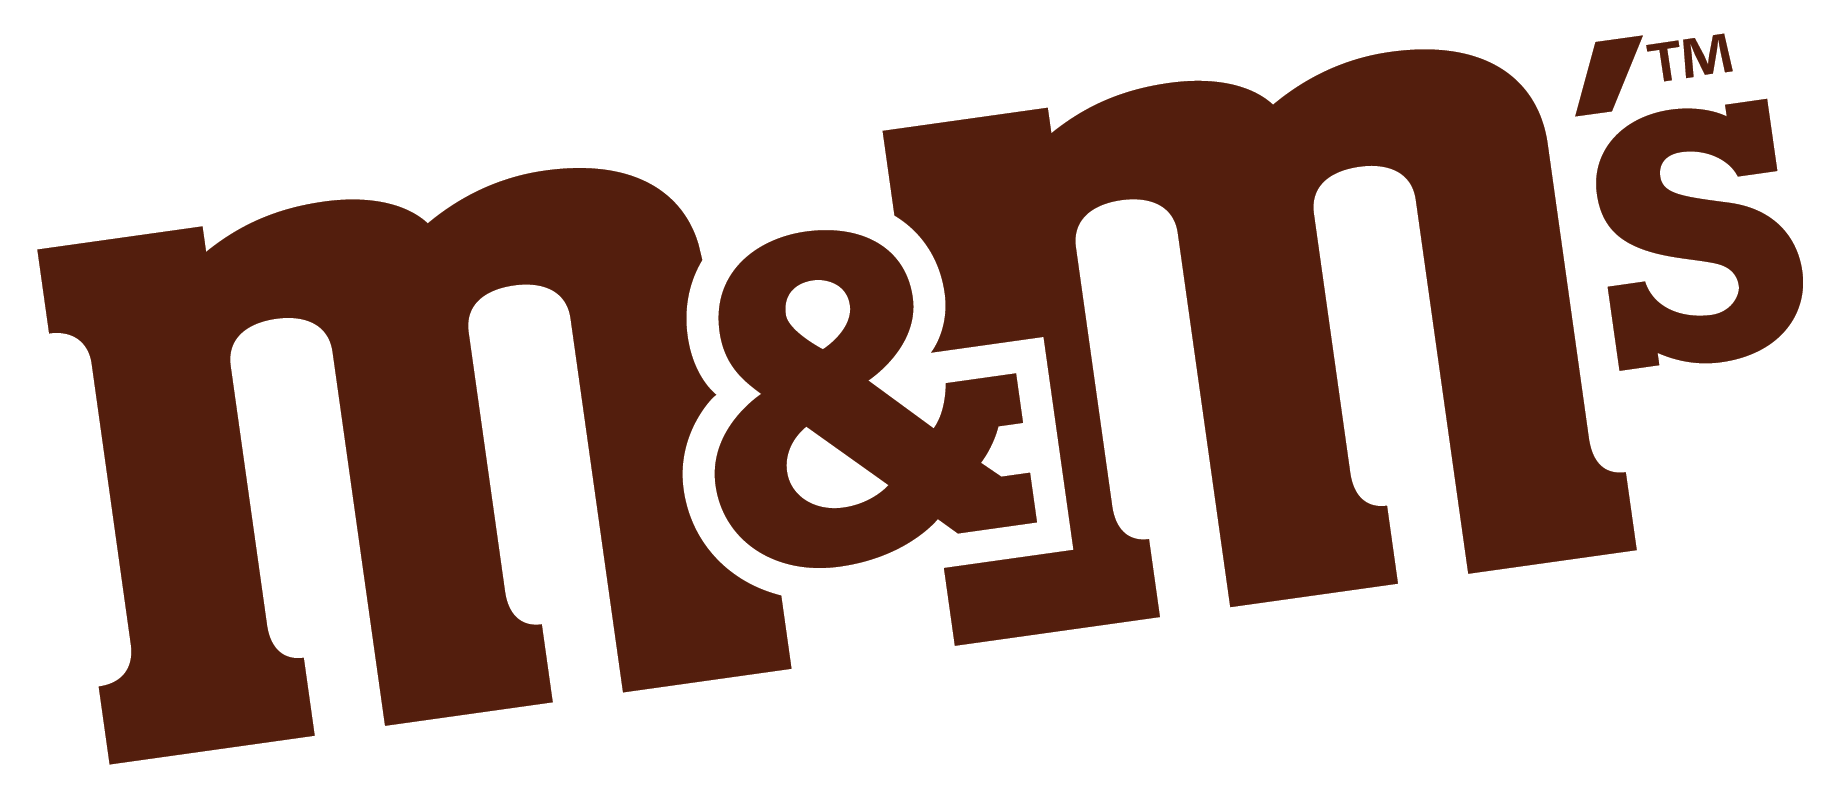 M&M'S Logo